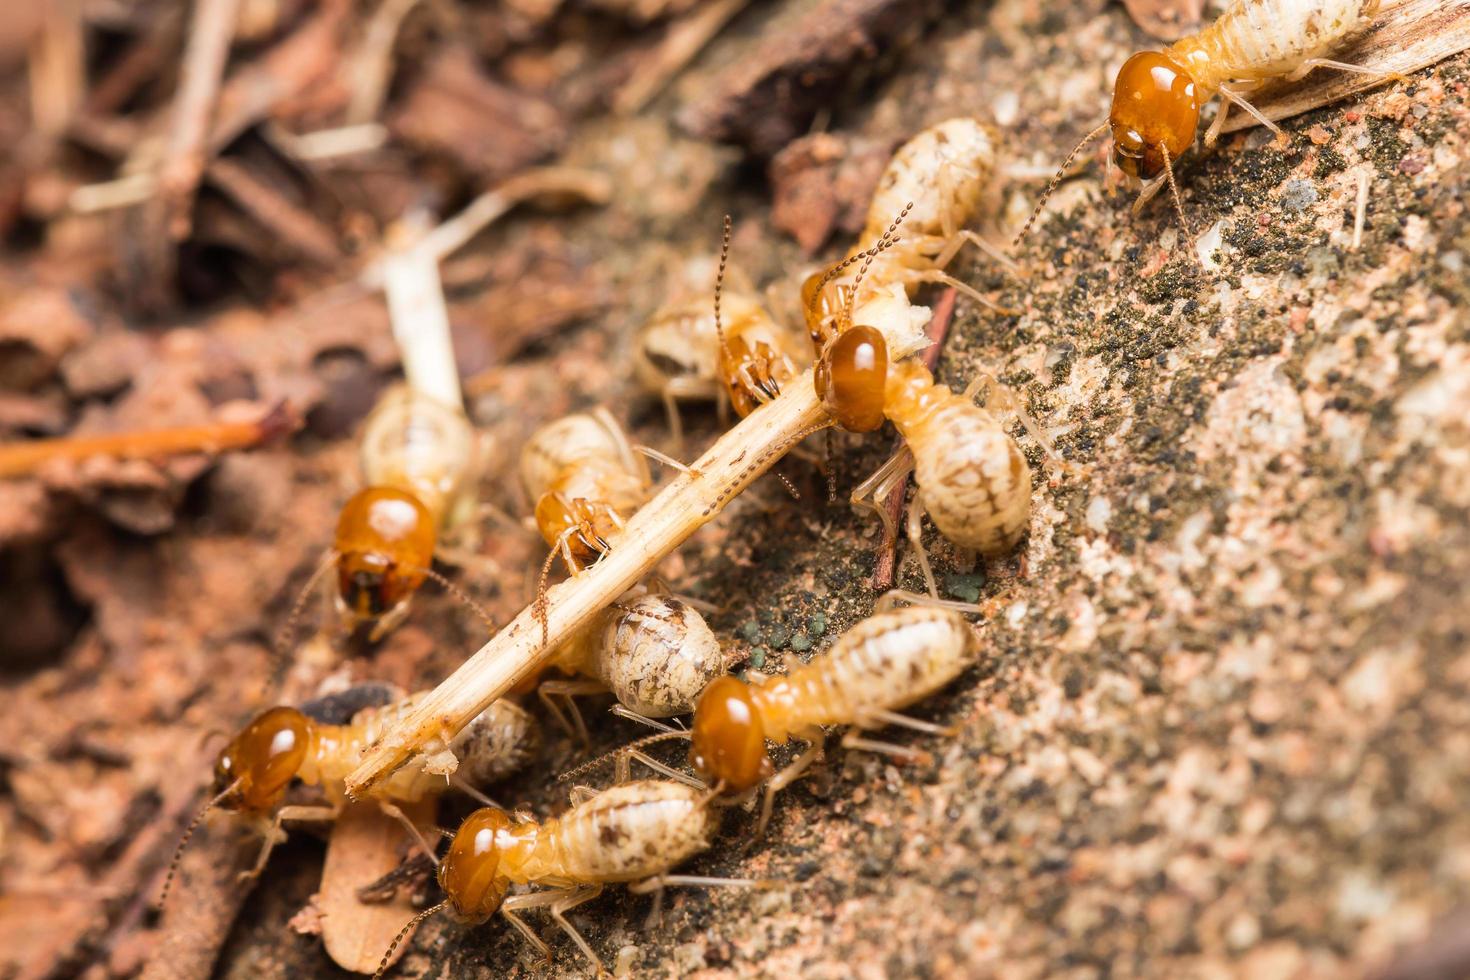 termieten helpen lossen hout chips. foto